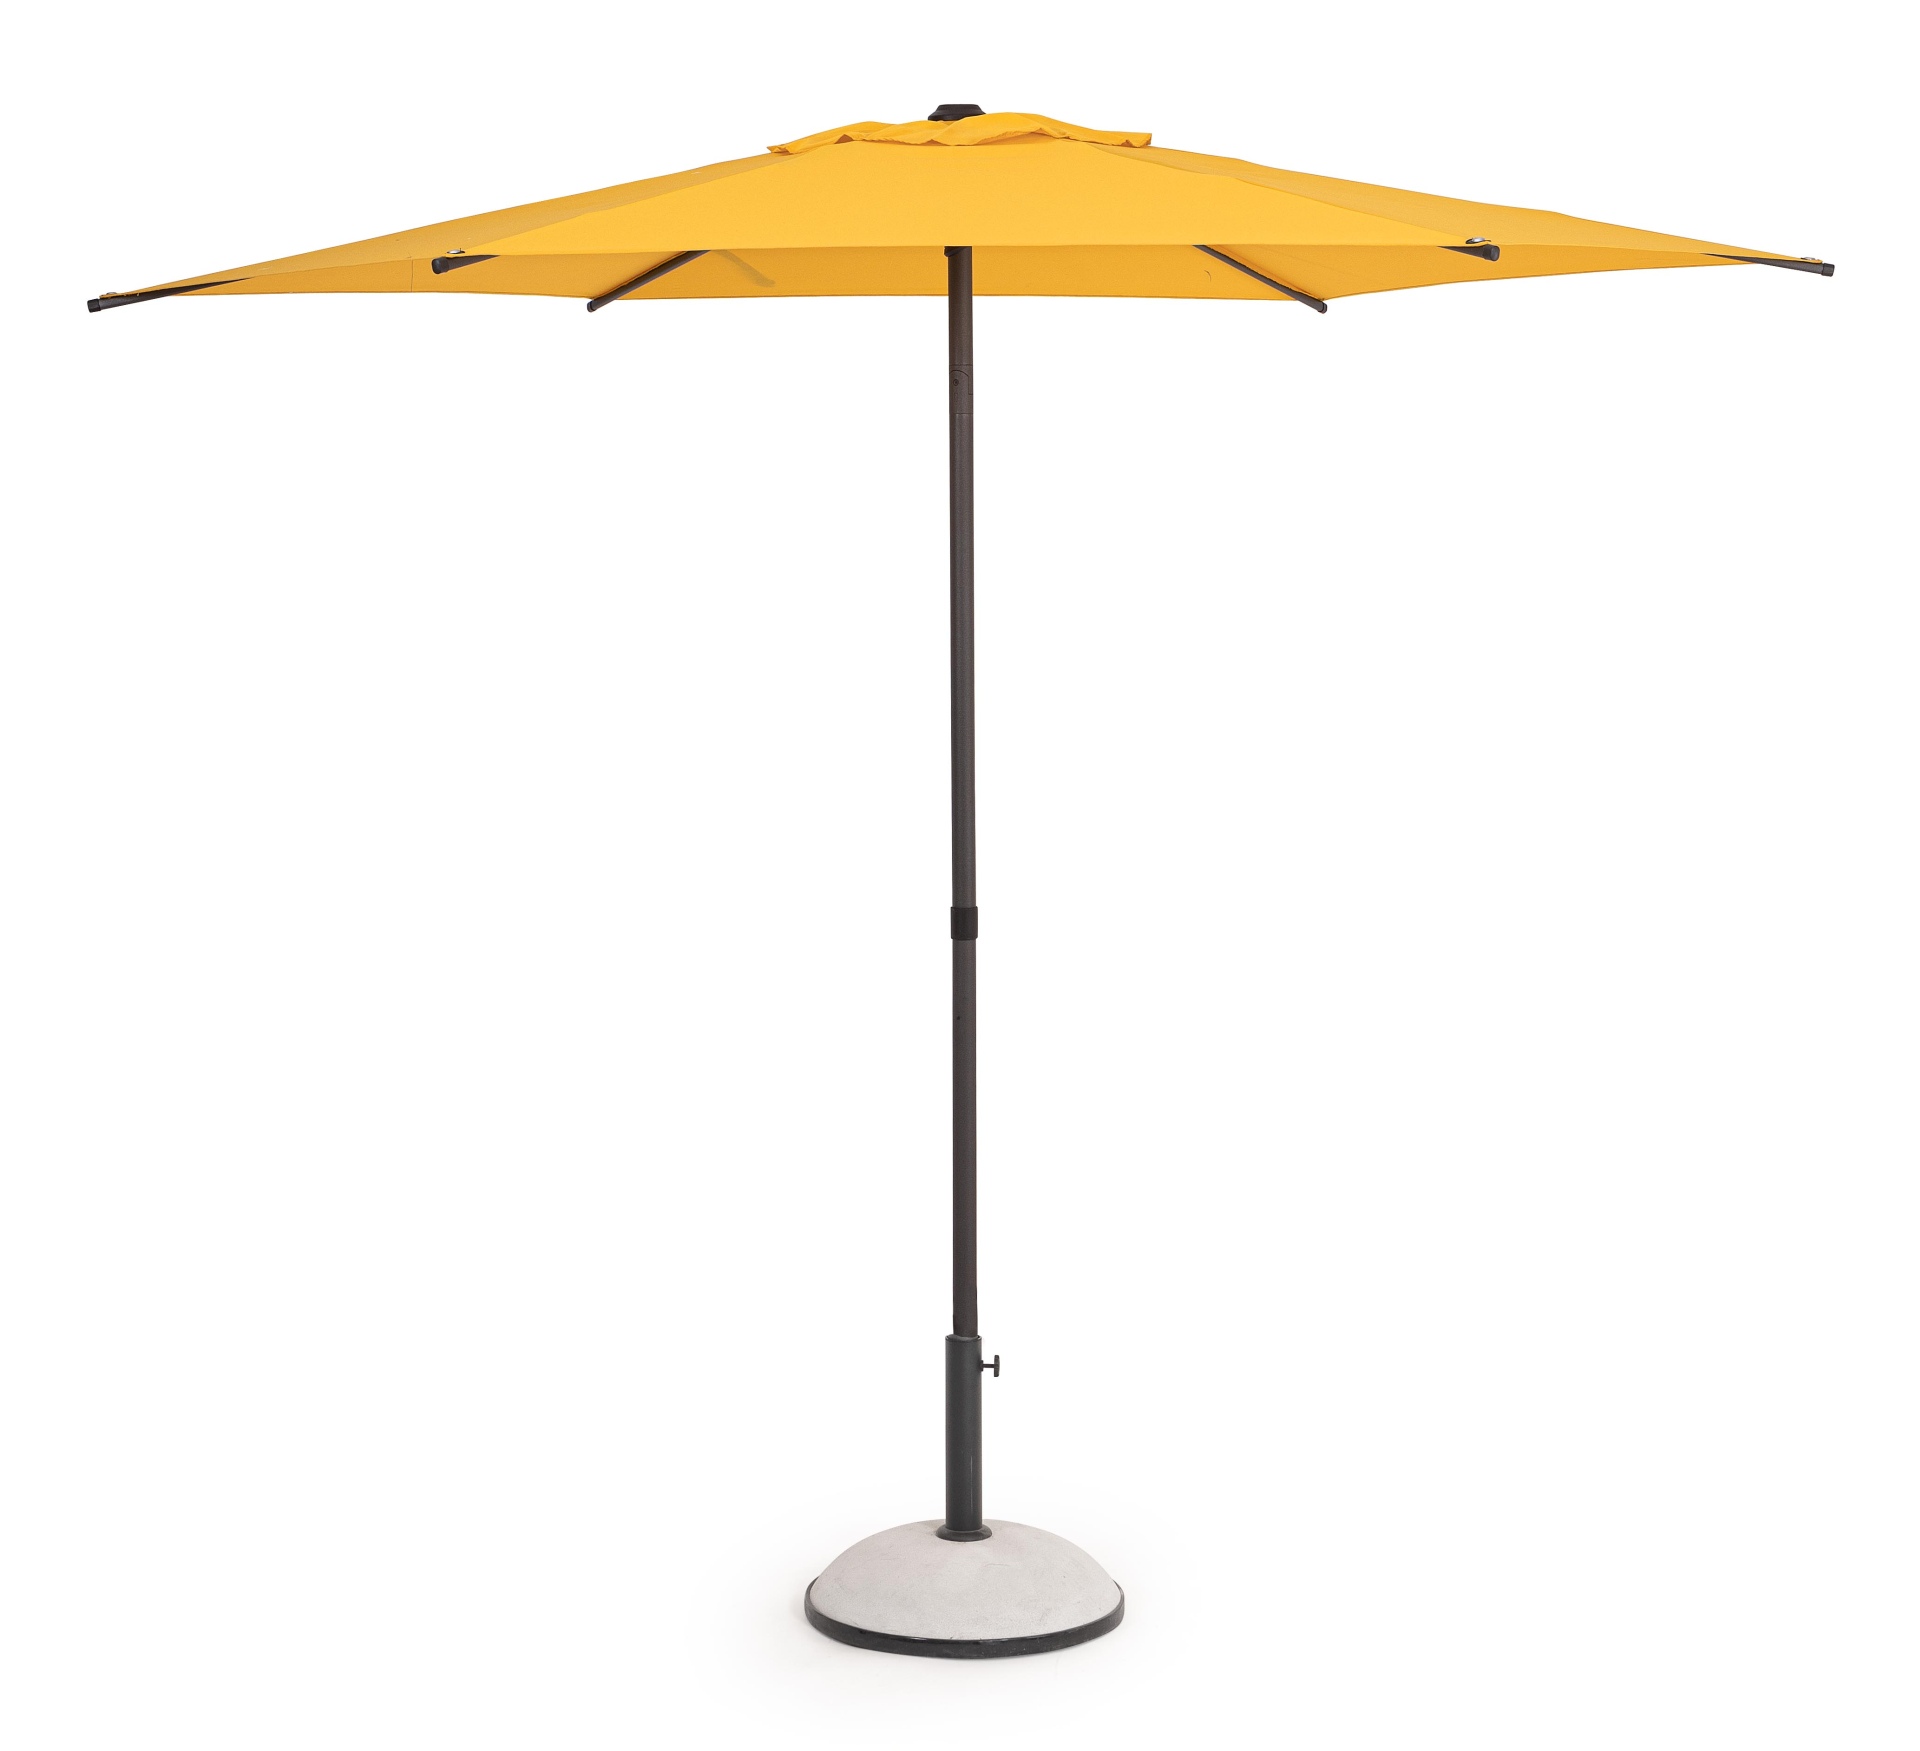 Der Sonnenschirm Samba überzeugt mit seinem klassischen Design. Gefertigt wurde er aus einer Polyester Plane, welche einen gelben Farbton besitzt. Das Gestell ist aus Metall und hat eine Anthrazit Farbe. Der Sonnenschirm verfügt über einen Durchmesser von